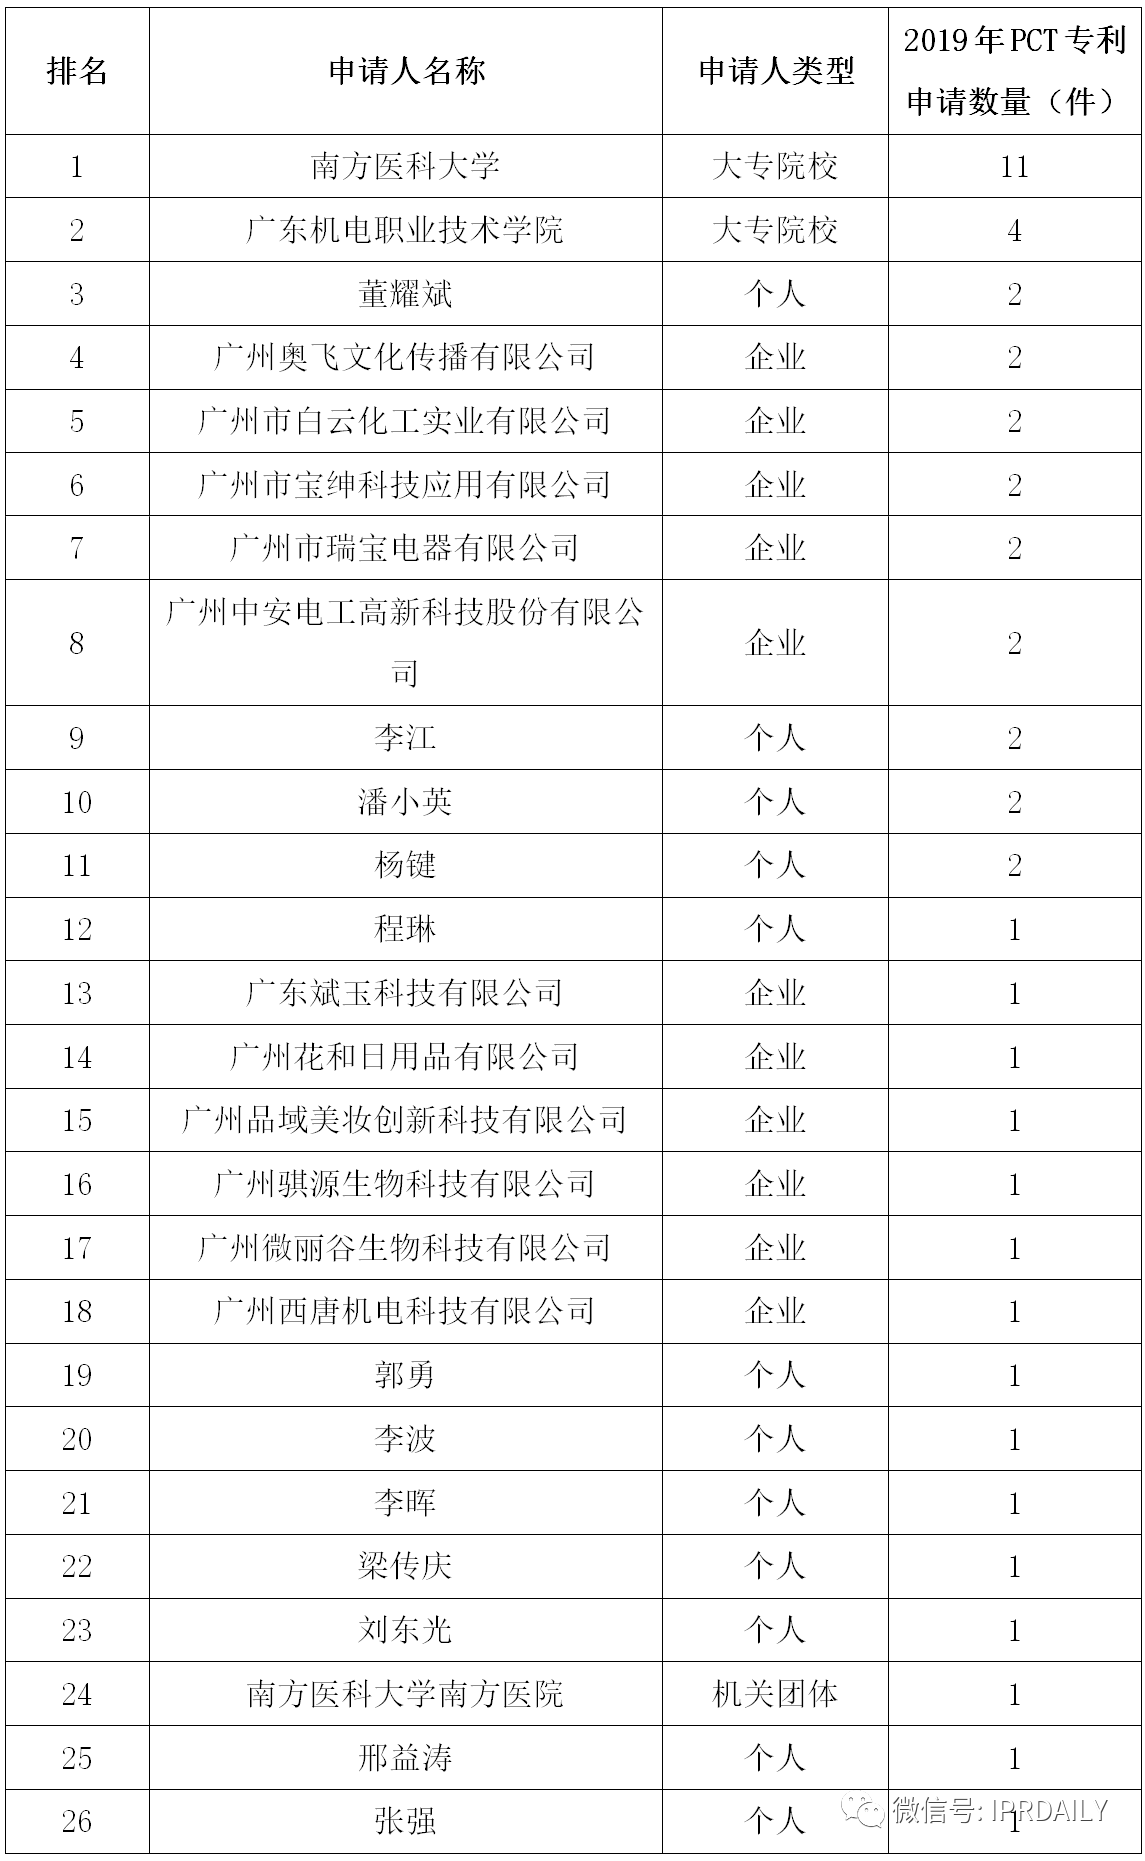 广州市白云区2019年专利数据分析报告